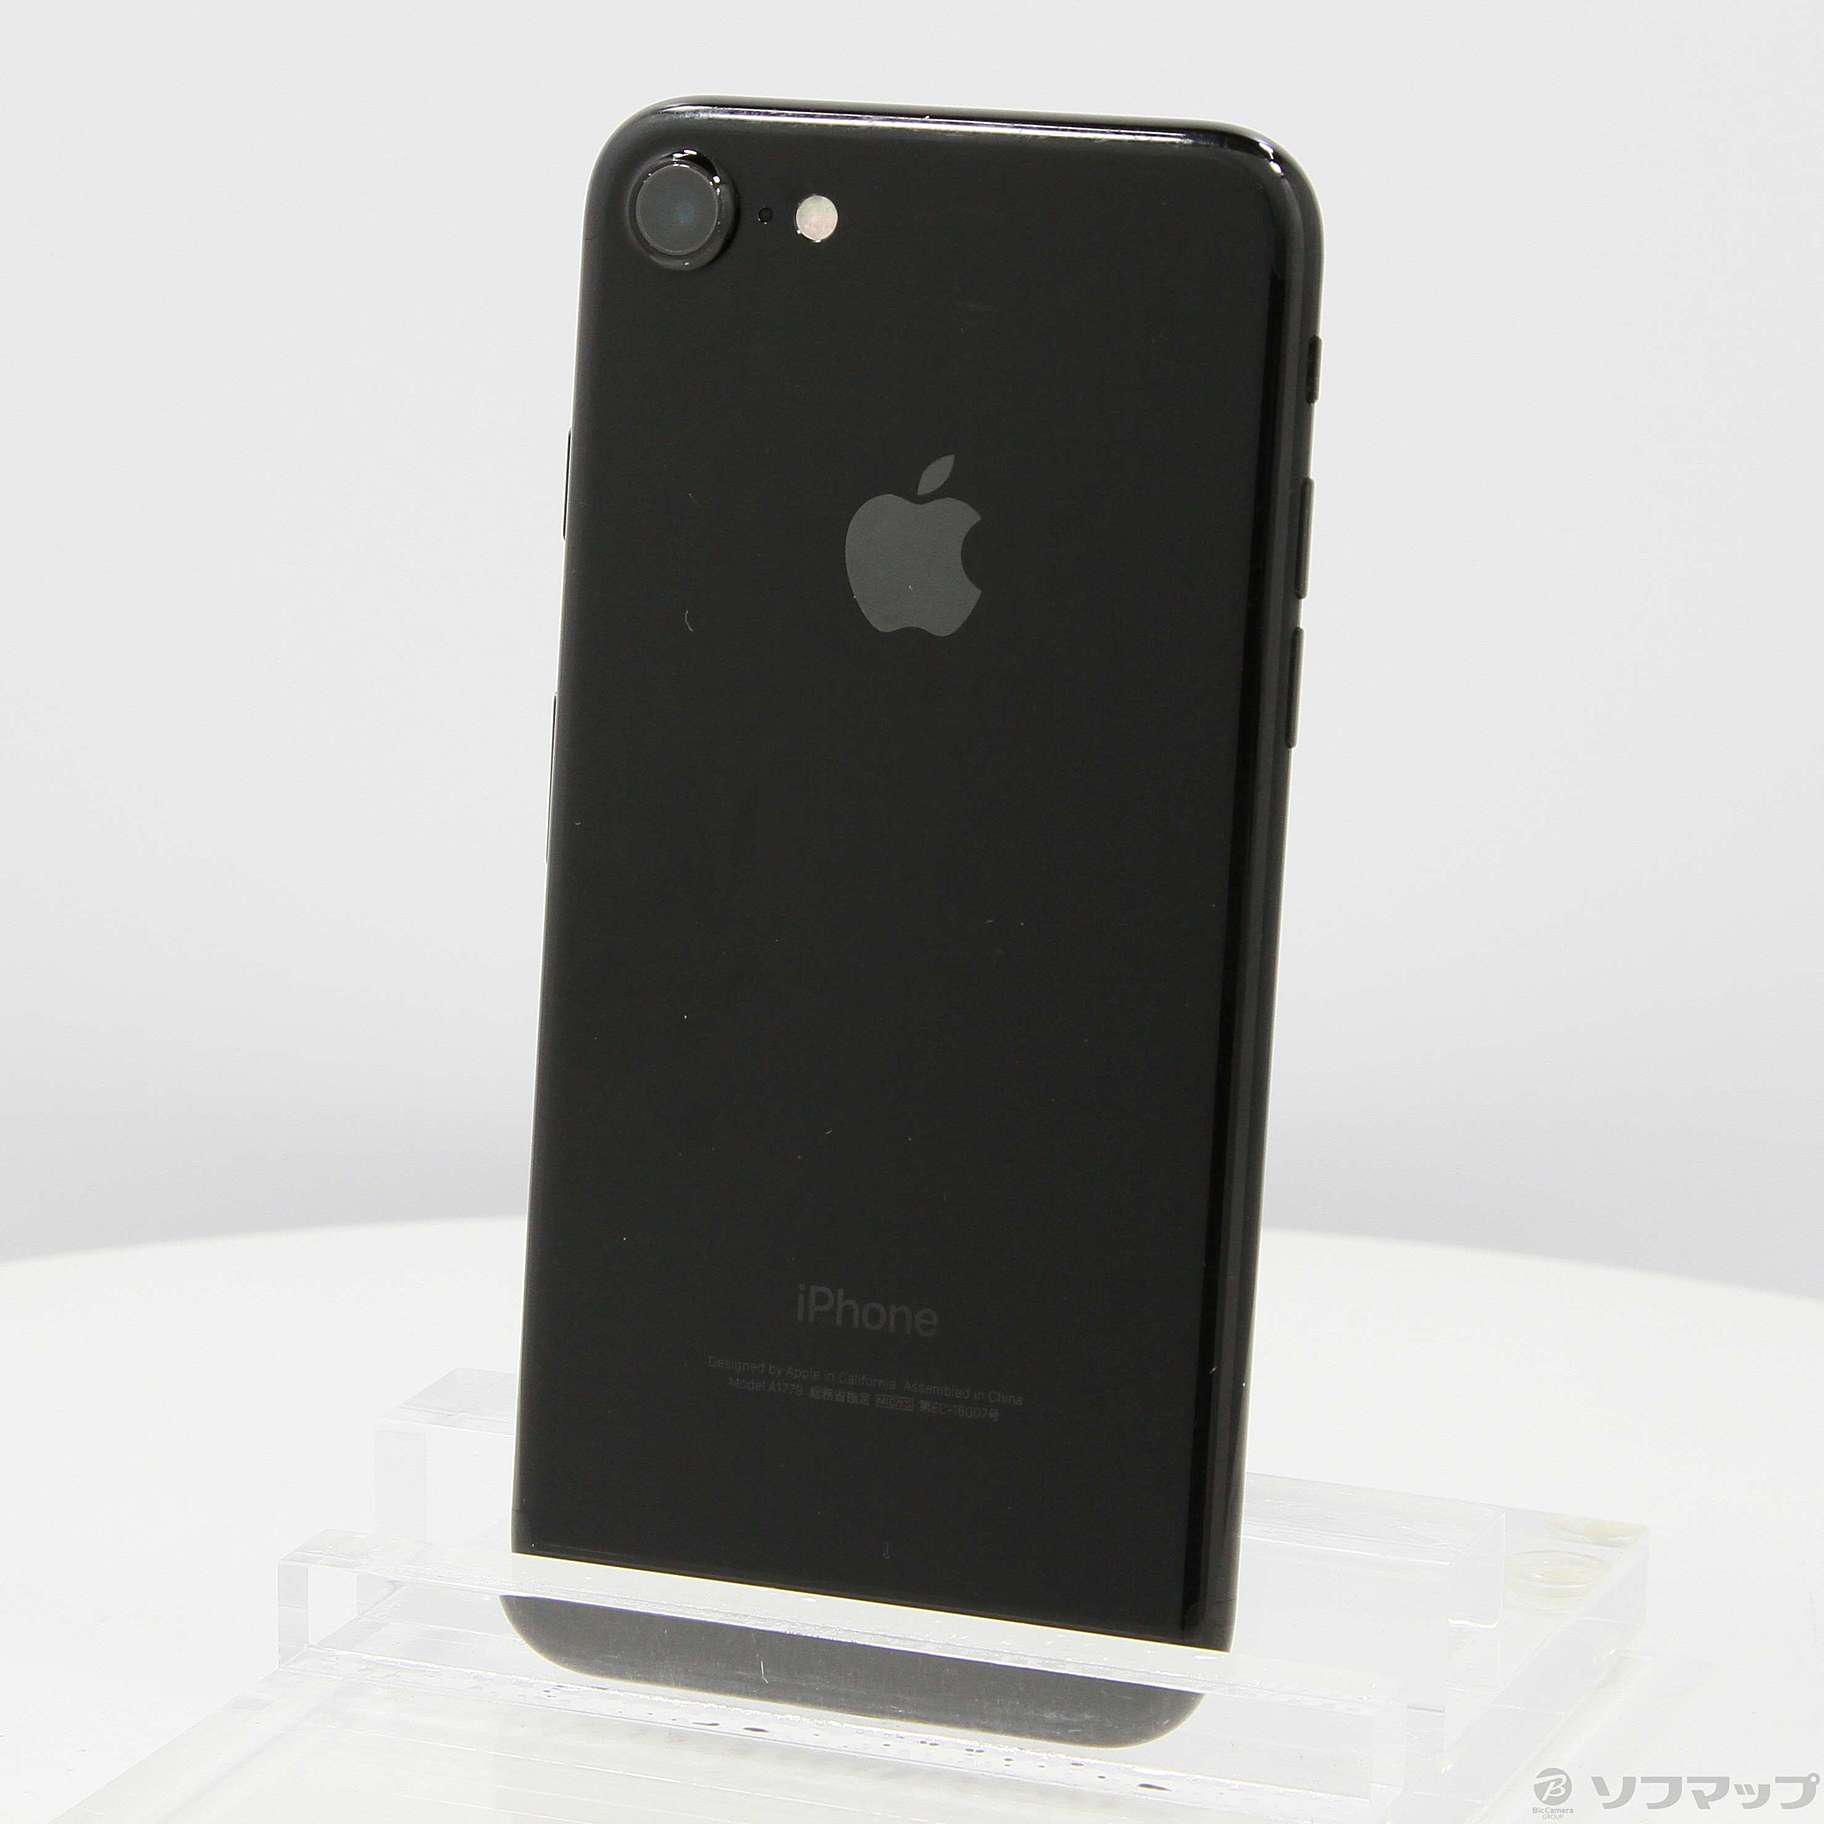 新品未使用 iPhone 7 BLACK 32GB SIMフリー - スマートフォン本体